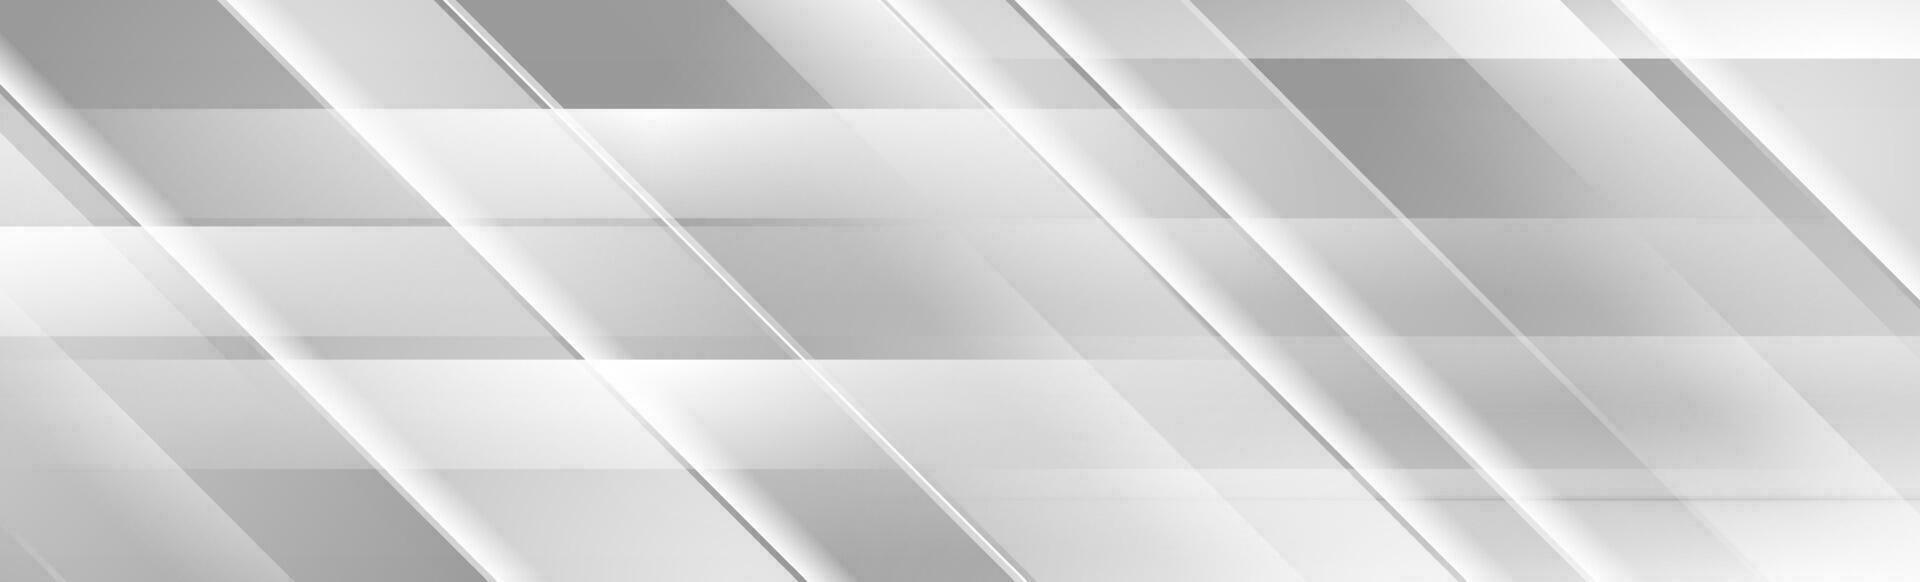 silver- grå geometrisk abstrakt tech baner design vektor